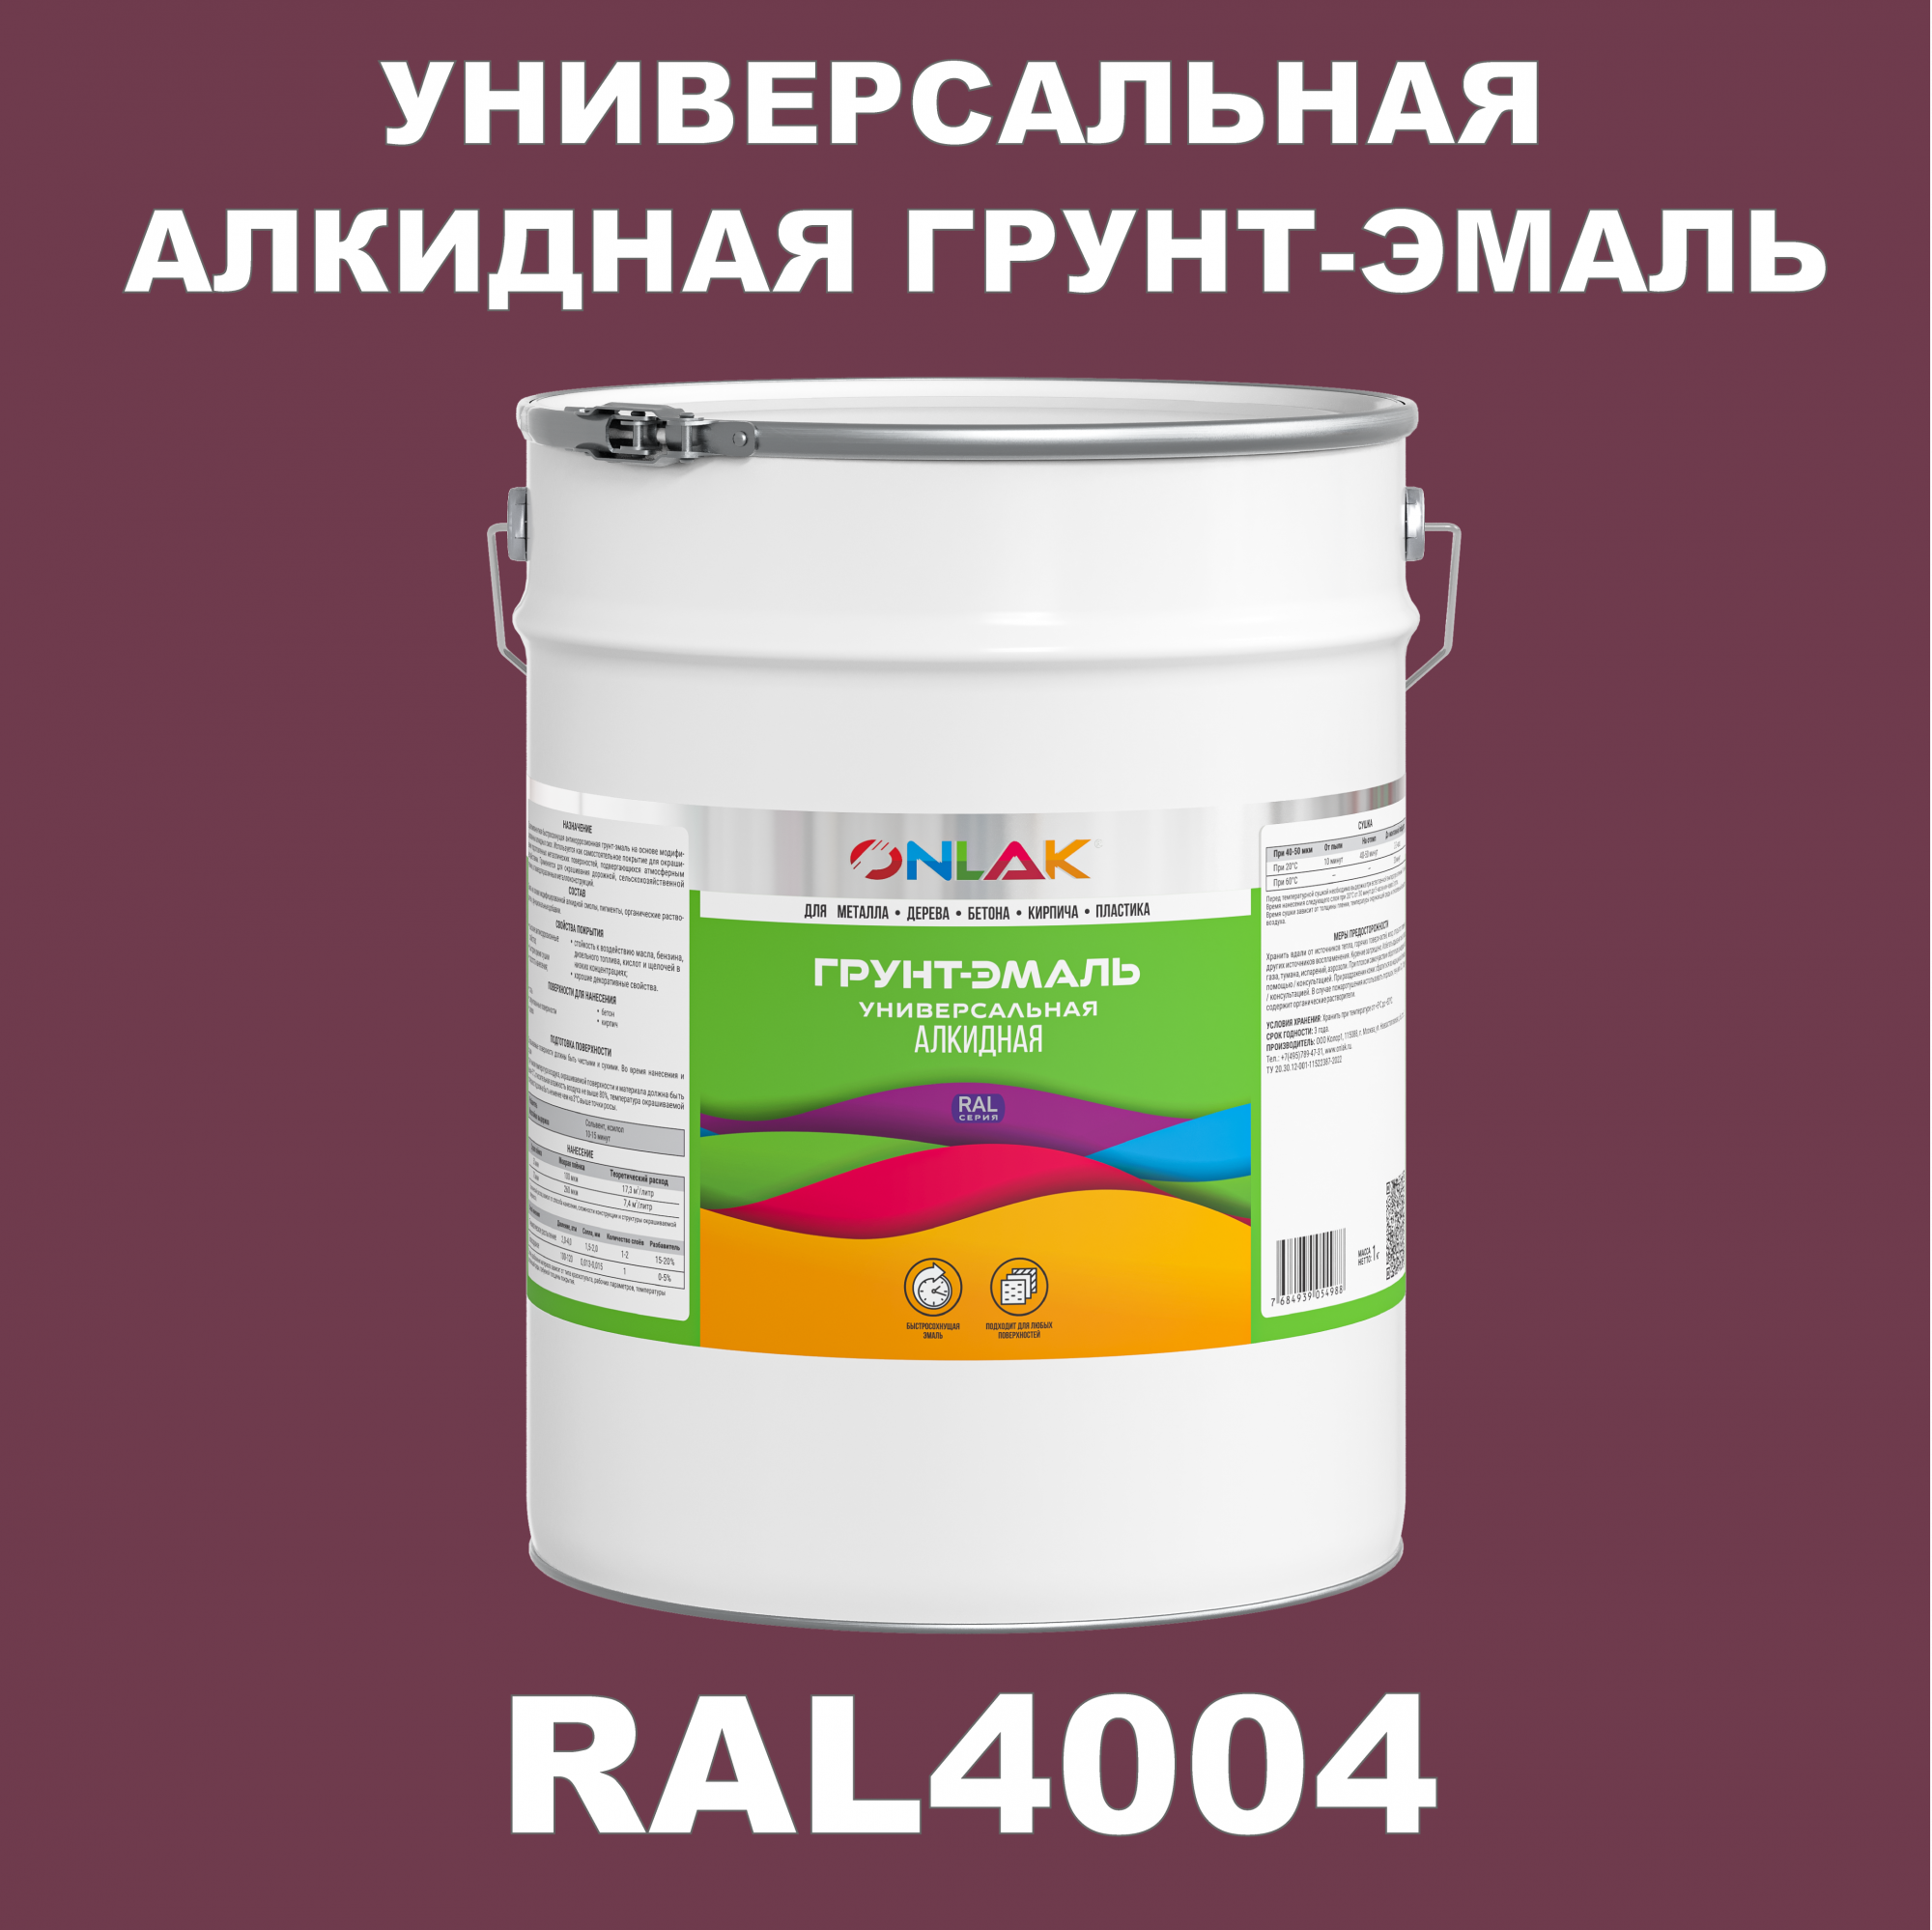 Грунт-эмаль ONLAK 1К RAL4004 антикоррозионная алкидная по металлу по ржавчине 20 кг антикоррозионная грунт эмаль onlak ral 4012 фиолетовый 715 мл